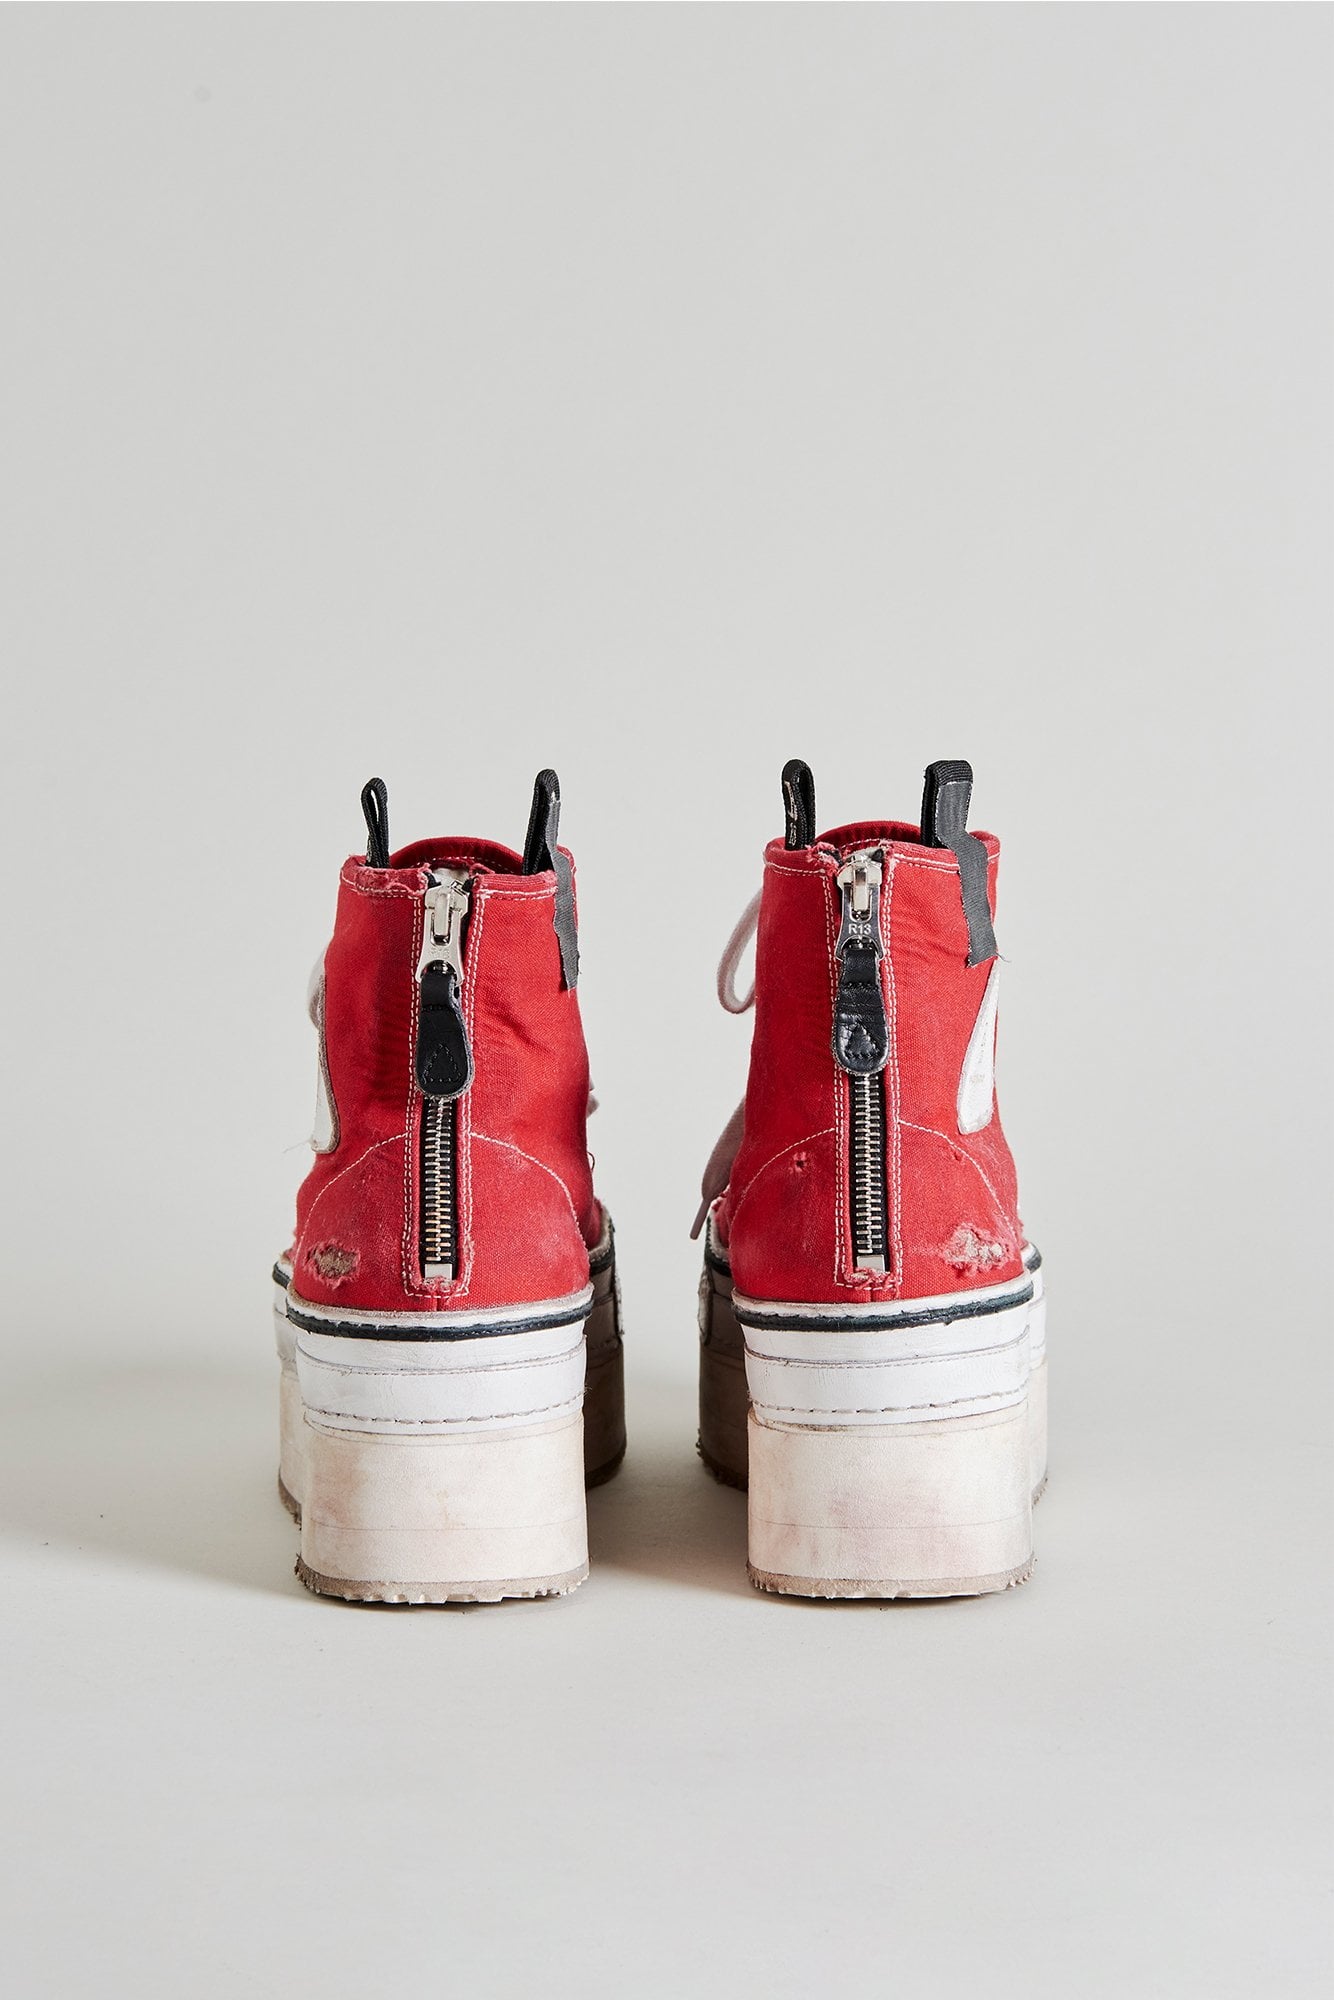 platform red sneakers